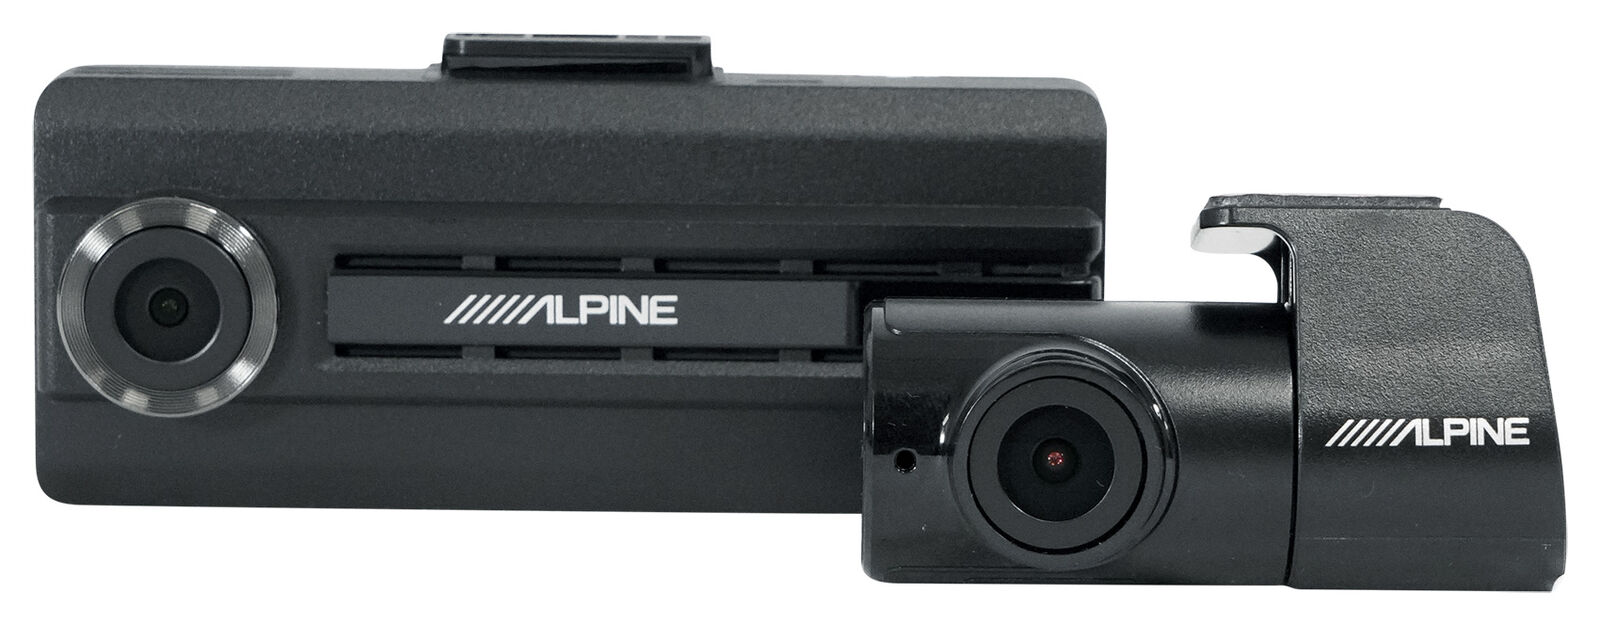 Alpine DVR-C310R Wi-Fi-Enabled Dashboard Dash Cam HD Video Recording+Rear Camera